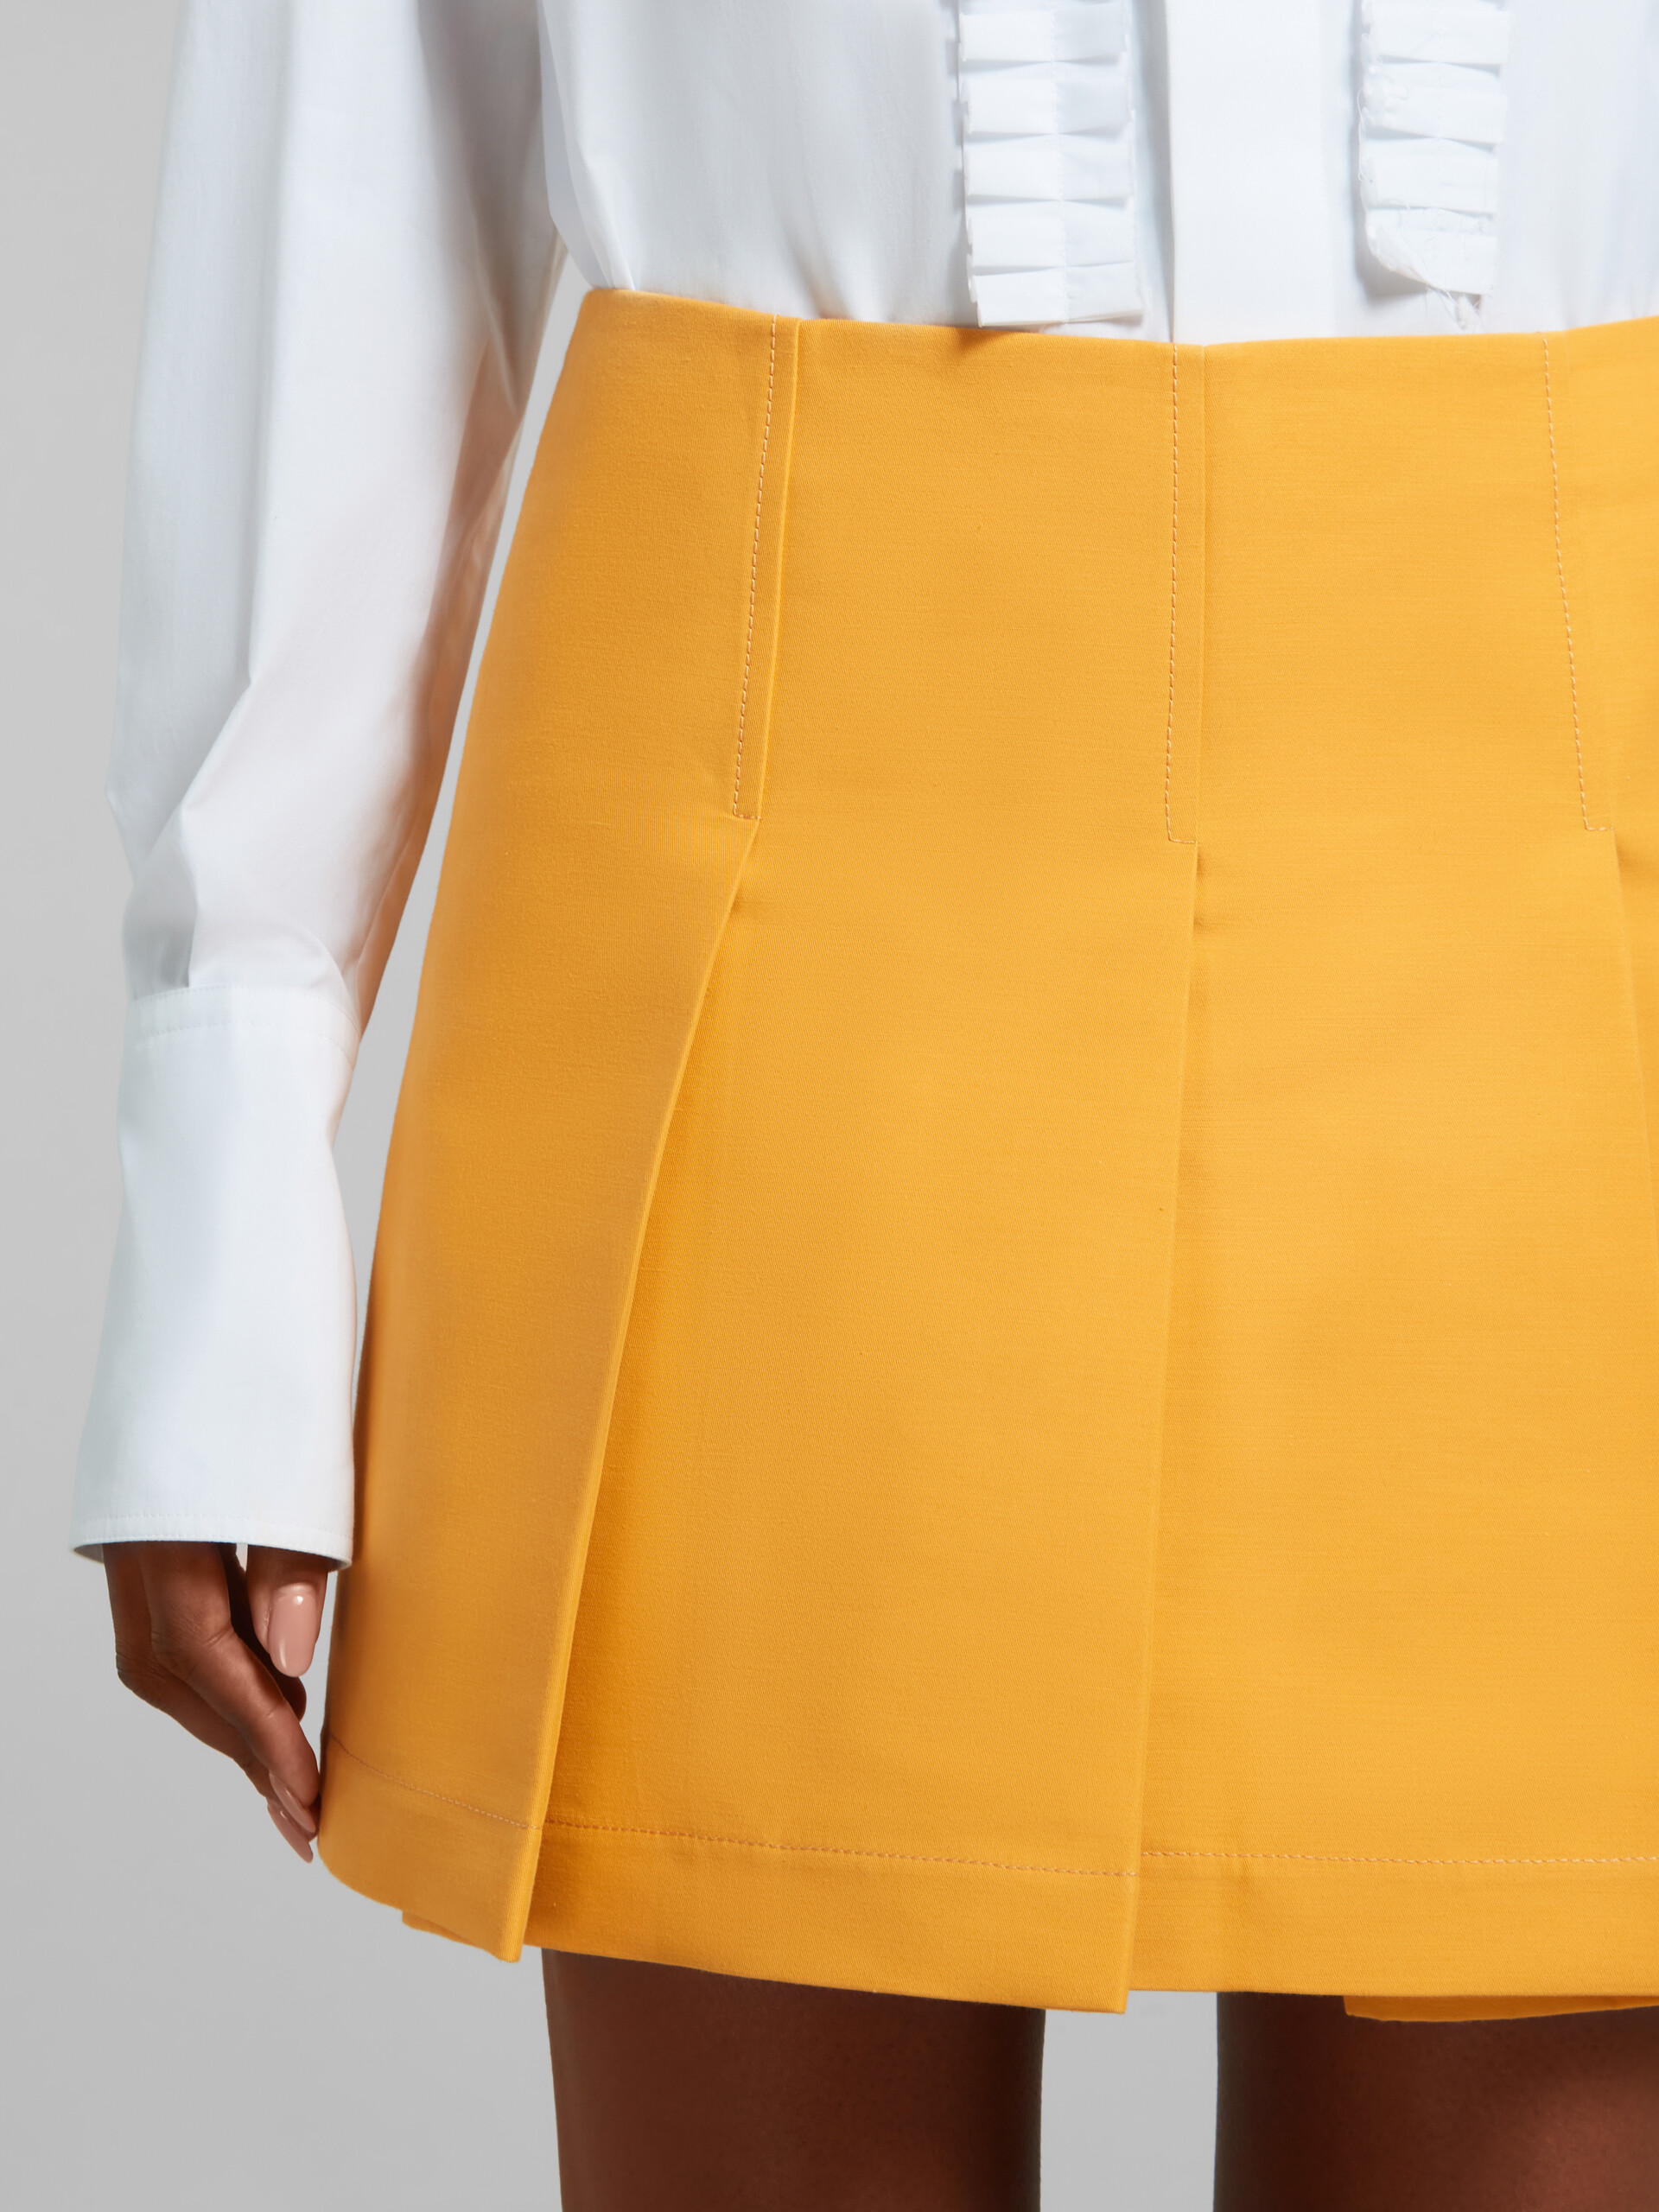 Minifalda de cady naranja con pliegues anchos - Faldas - Image 4